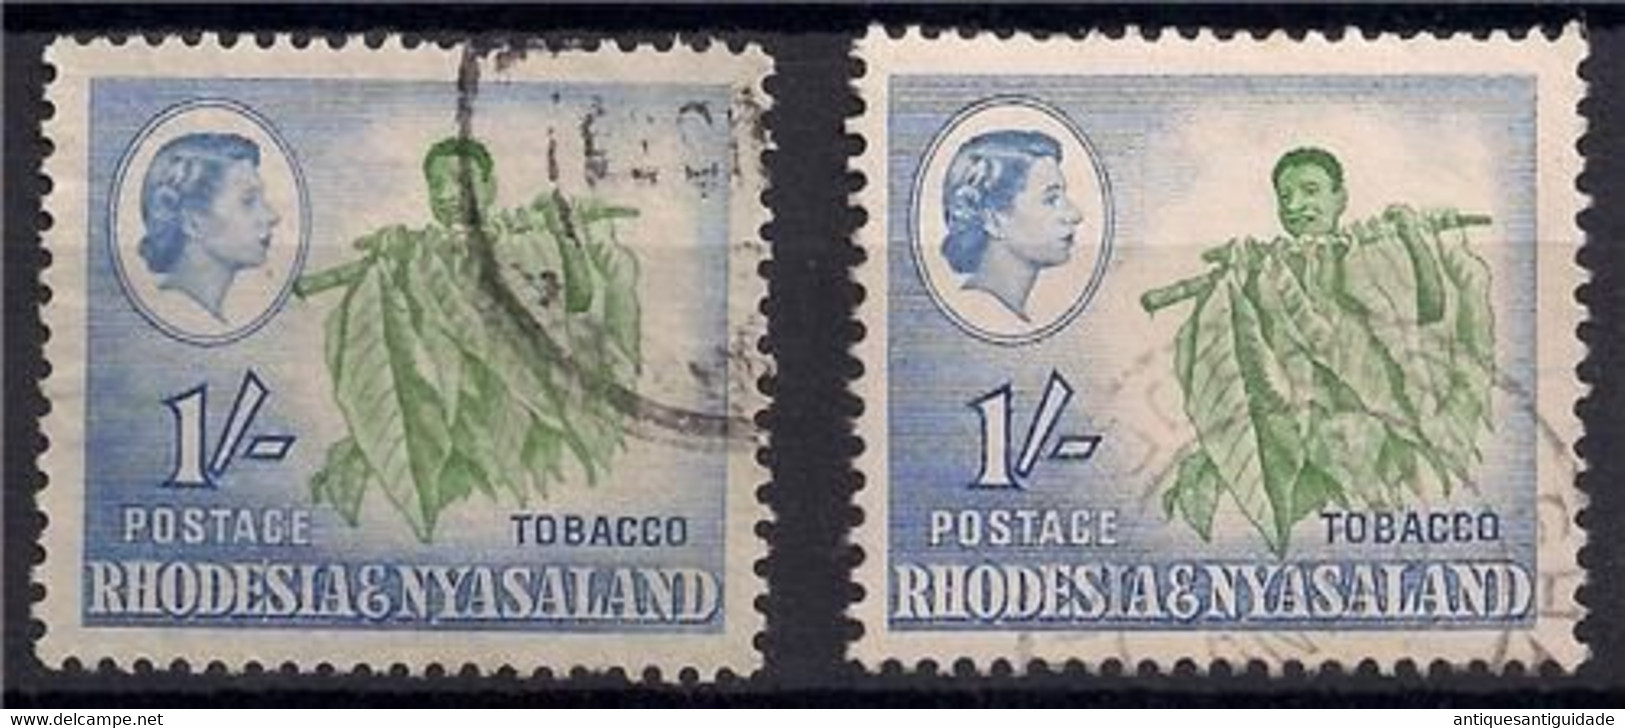 1959 RHODESIA NYASALAND 1/- Left Shift Green Printing,into Queens Cameo SG25 VAR - Rhodesia & Nyasaland (1954-1963)